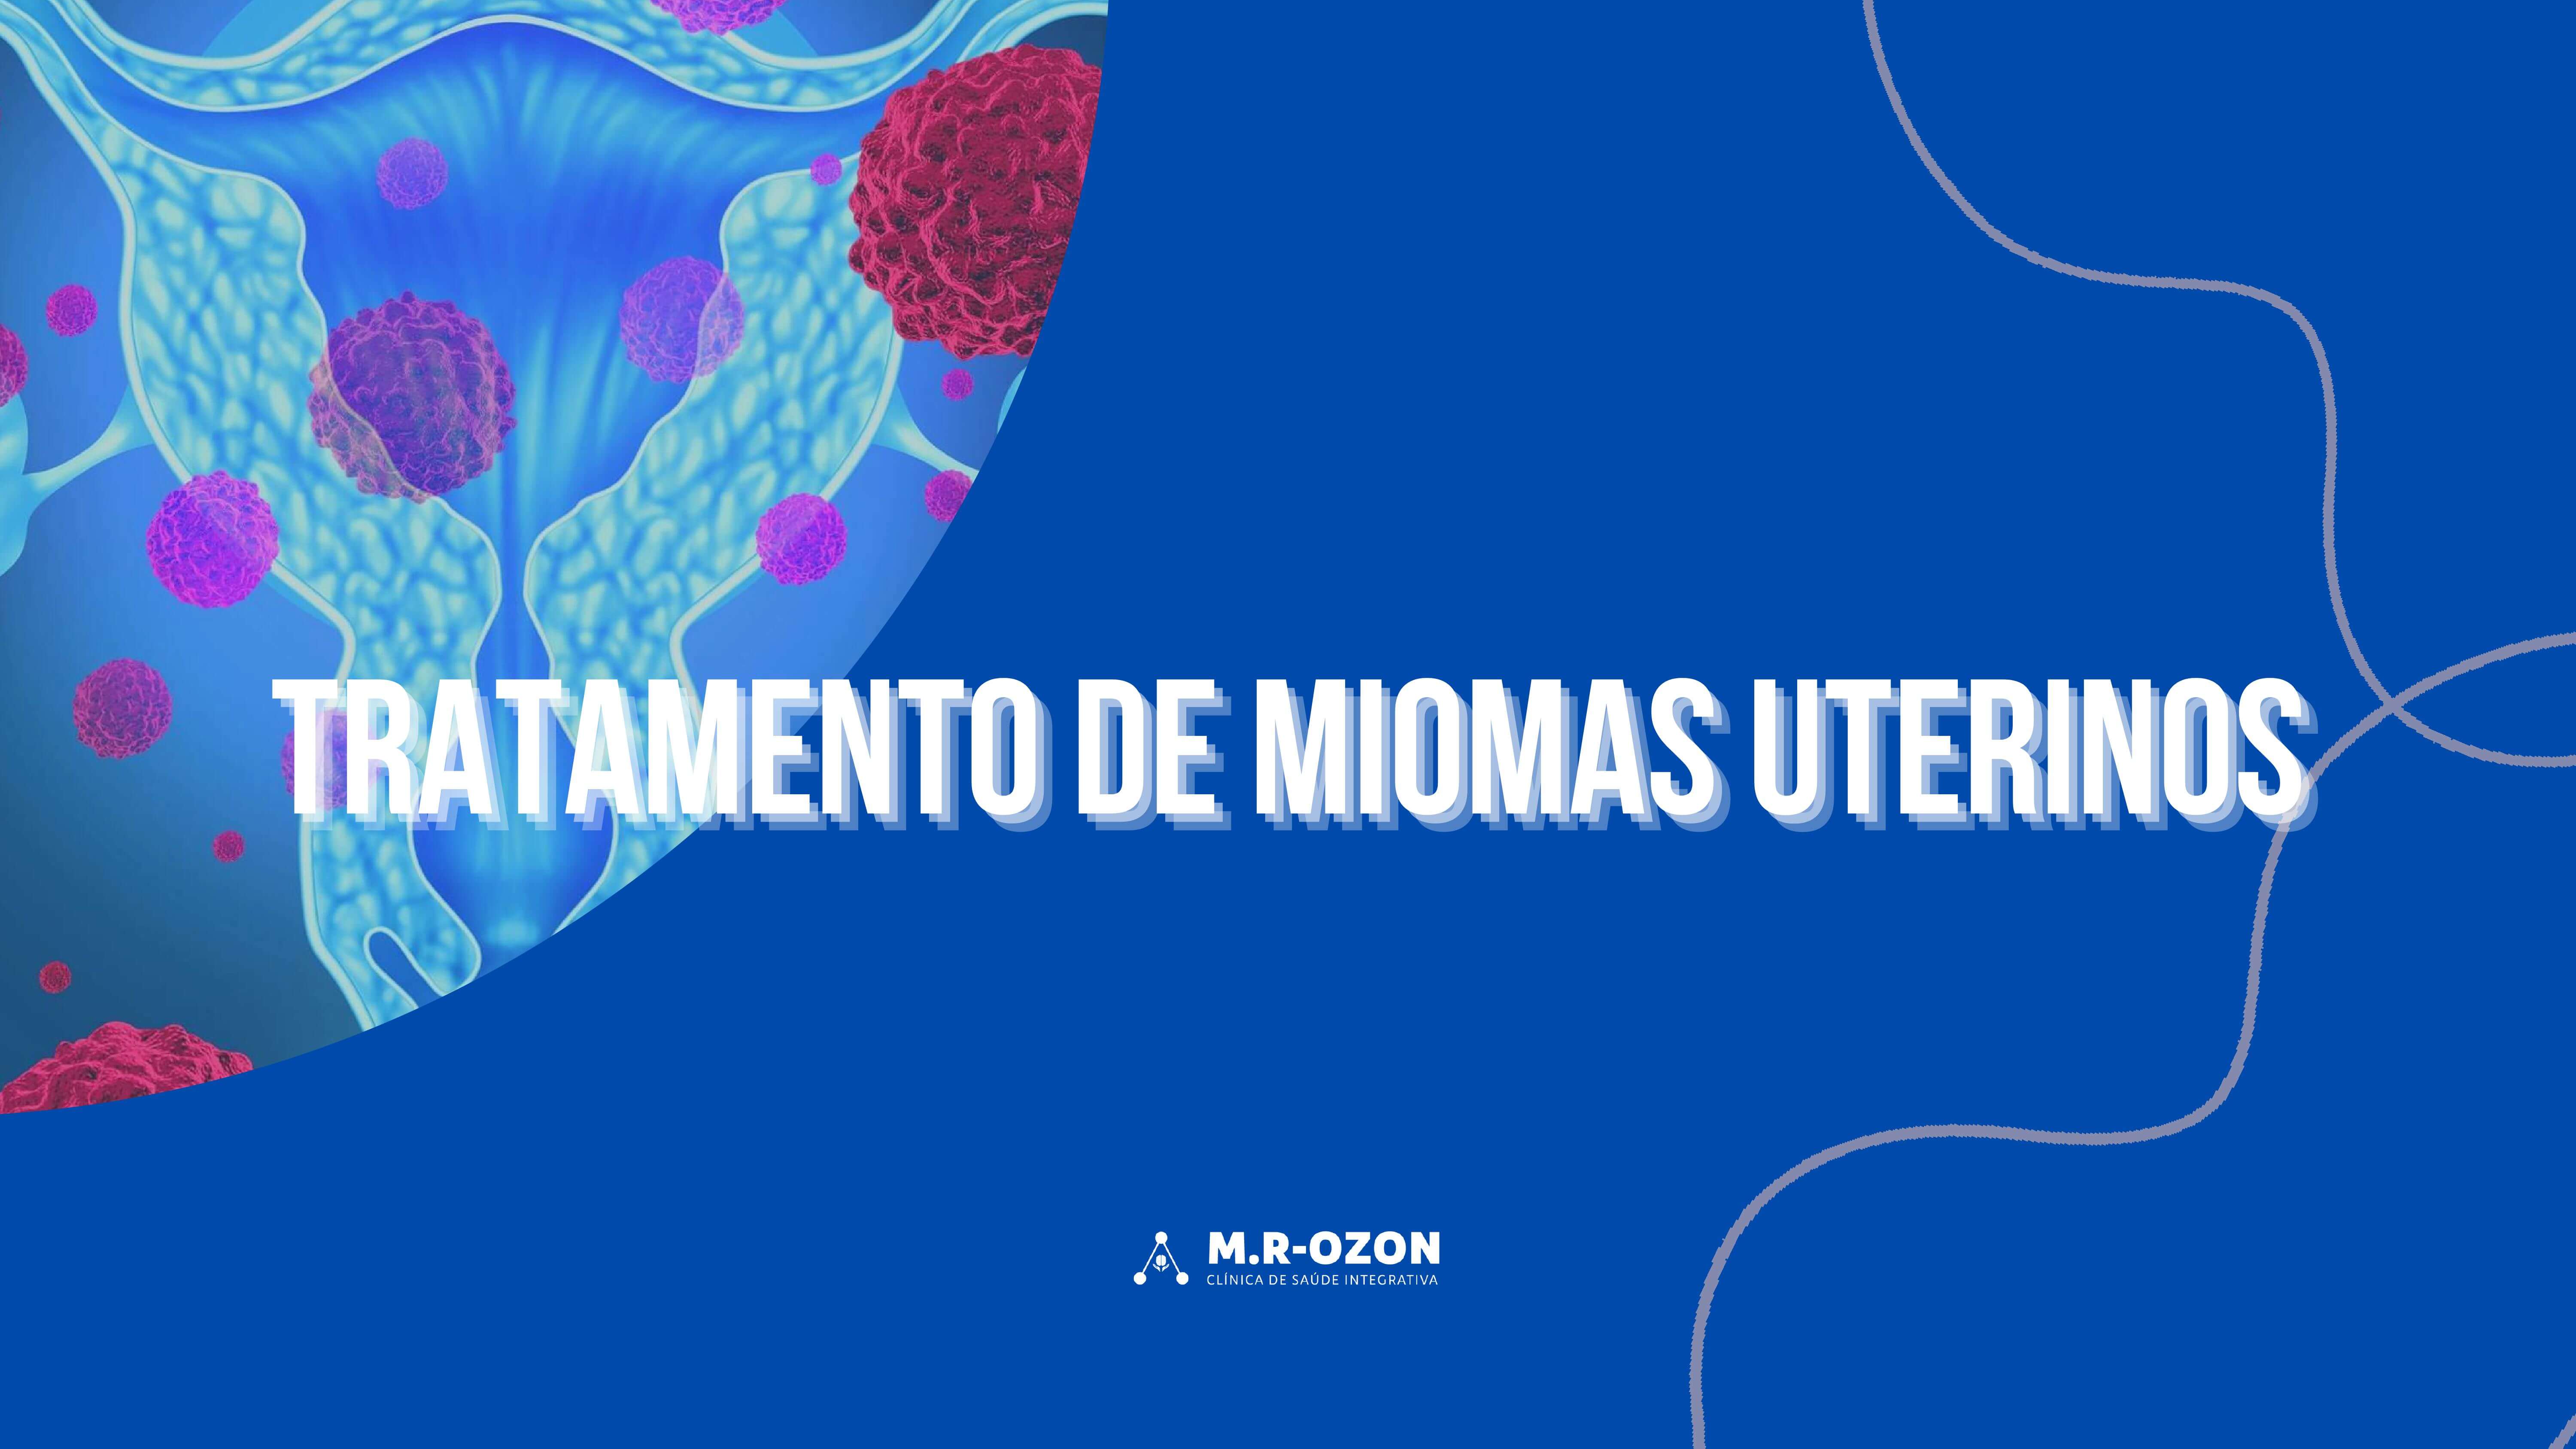 Tratamento de miomas uterinos